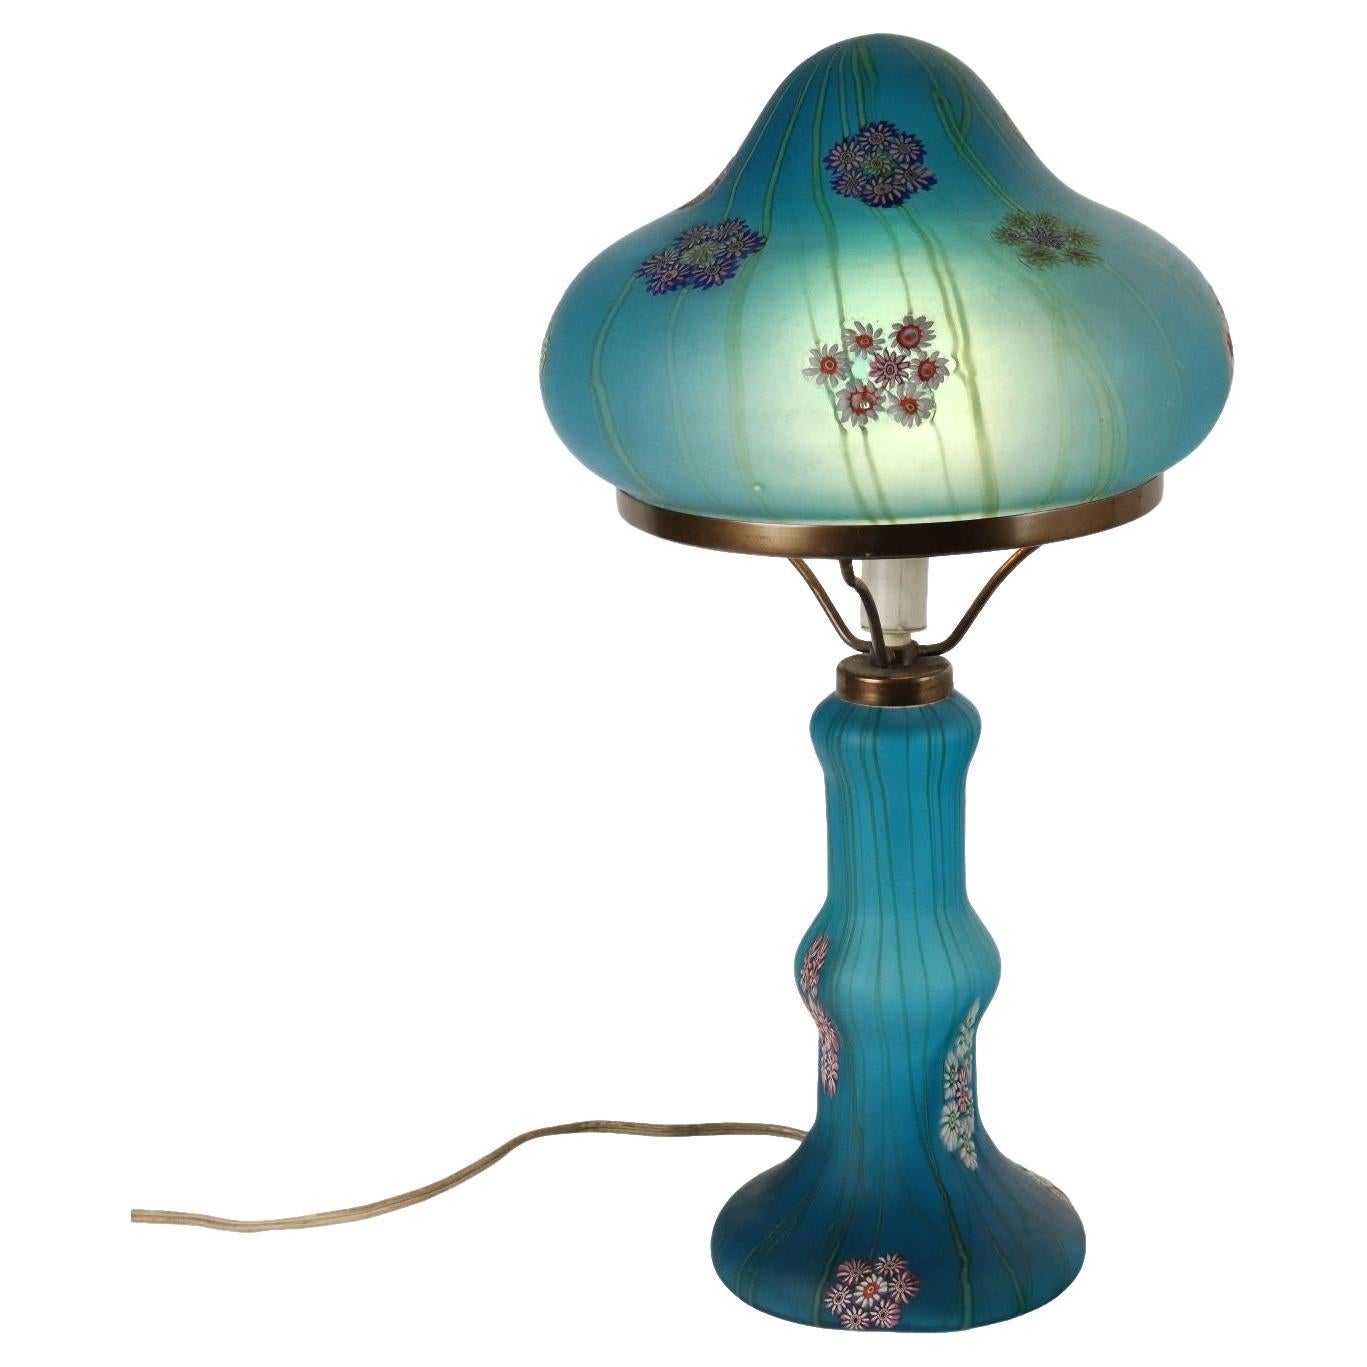 Millefiori Fratelli Toso Murano 1950s Table Lamp For Sale